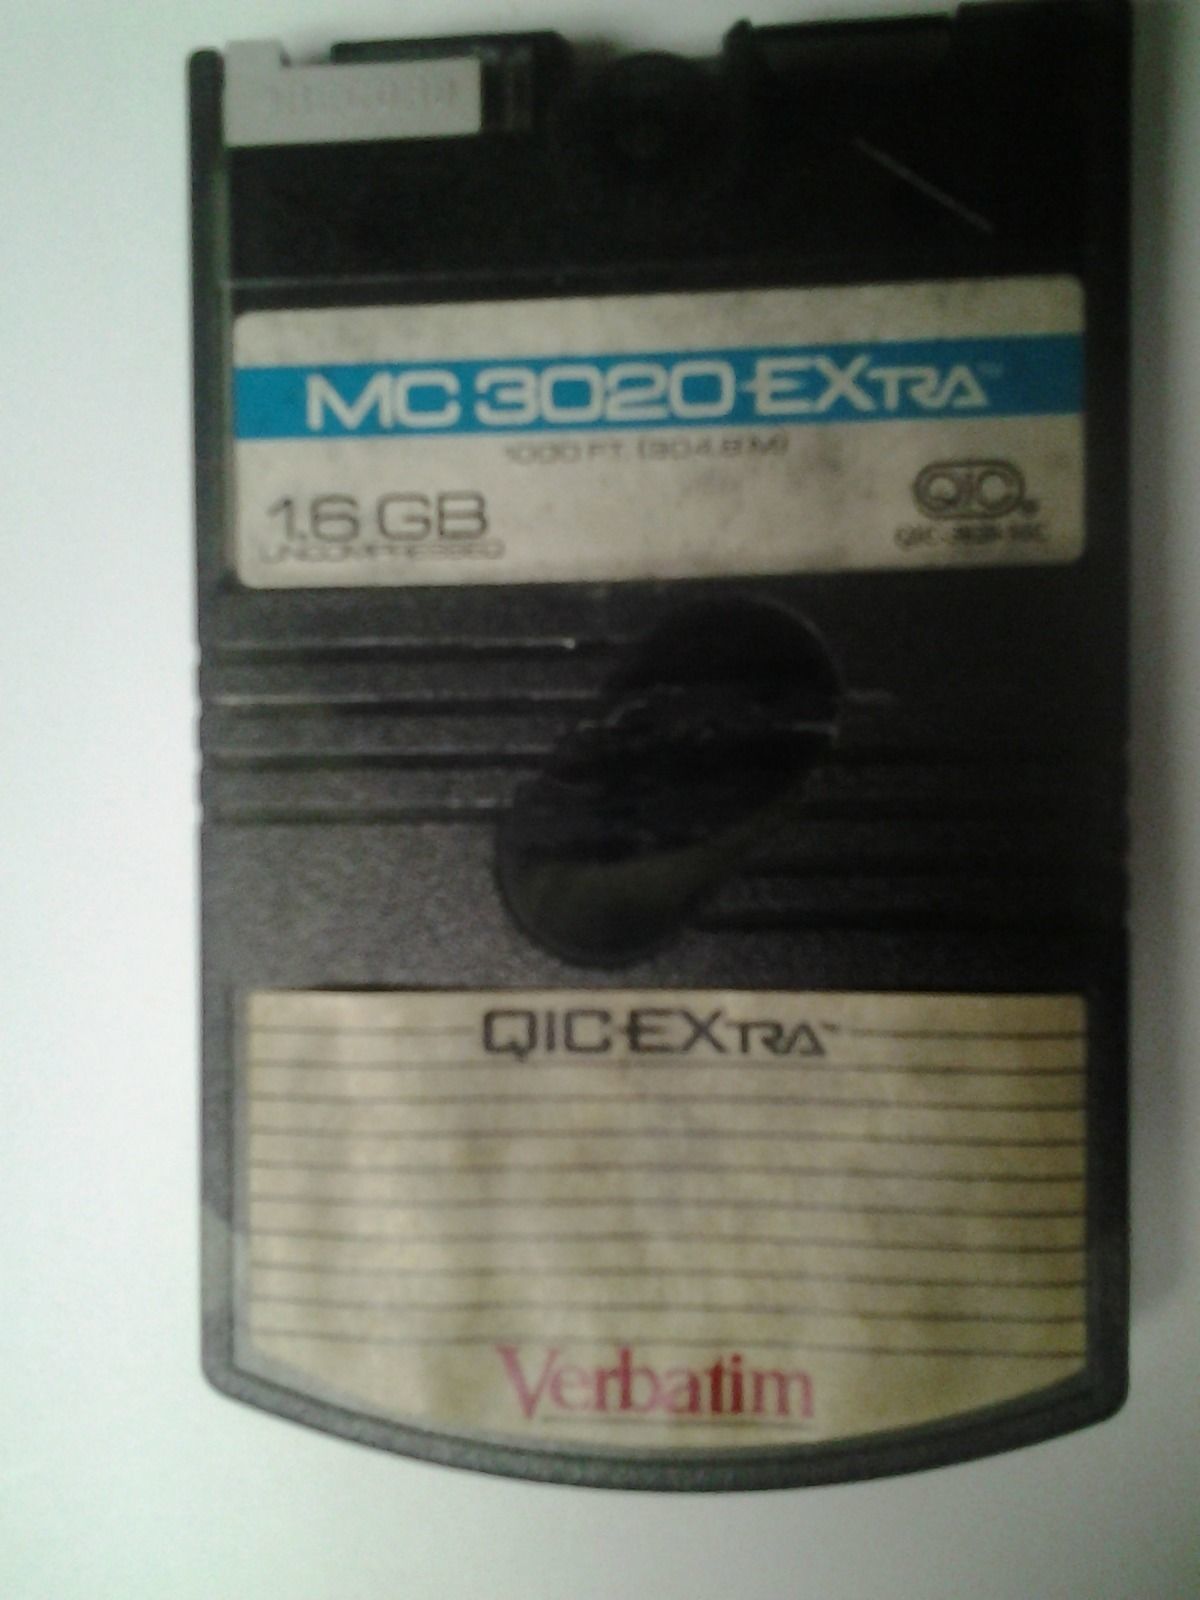 Verbatim QIC EXtra MC 3020 EXtra 1.6 GB - $14.85